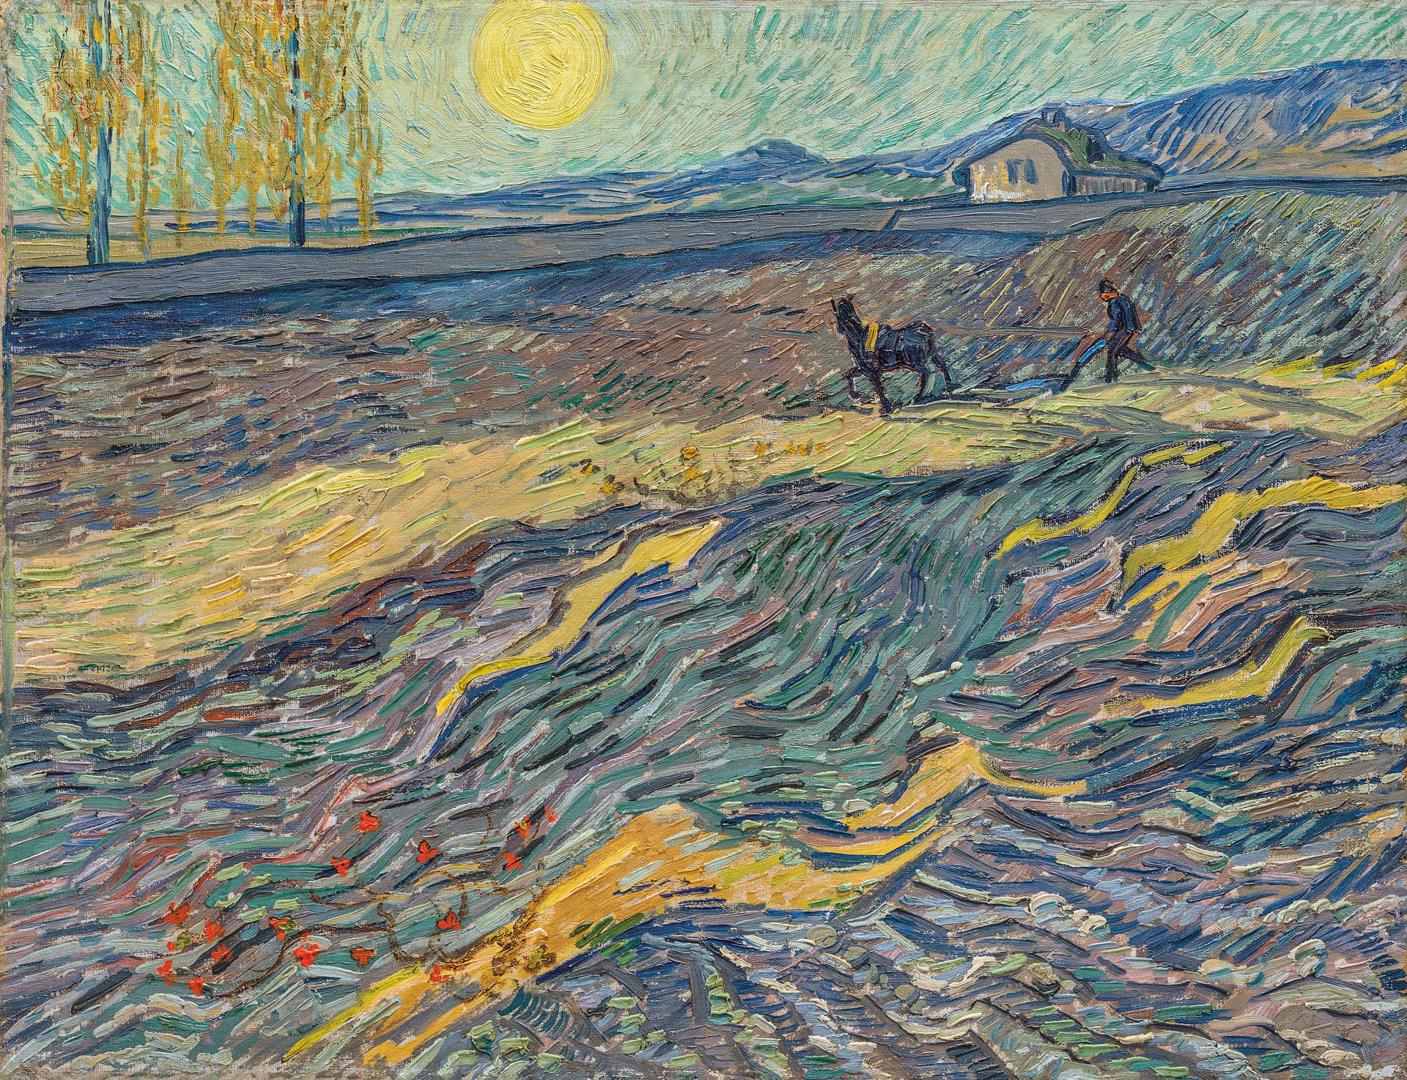 Landscape with Ploughman by Vincent van Gogh